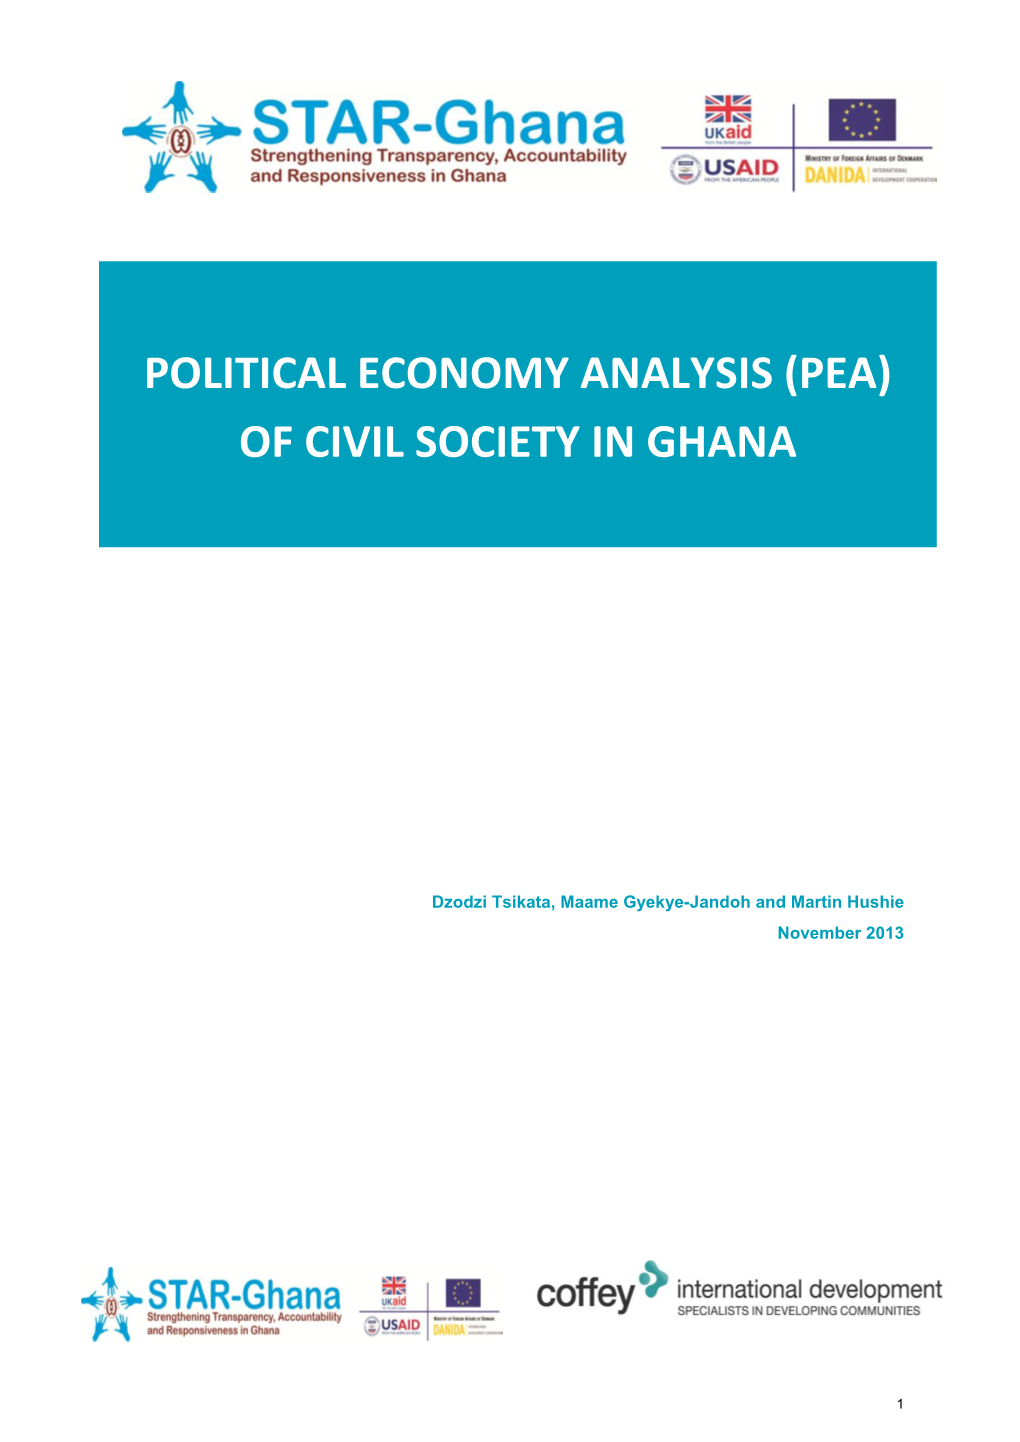 Of Civil Society in Ghana